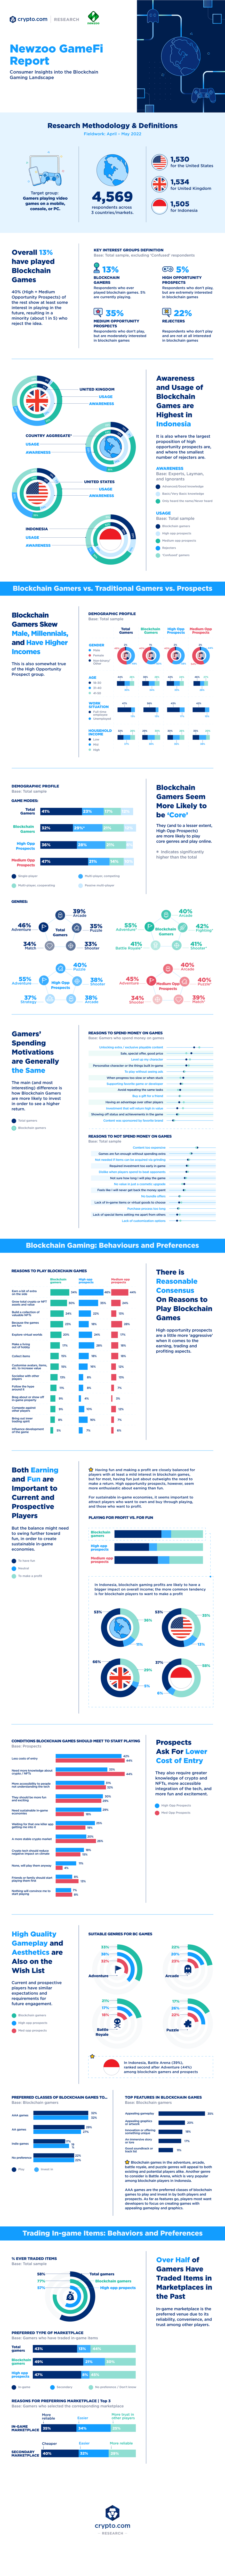 Newzoo Gamefi Survey Report Infographic V4